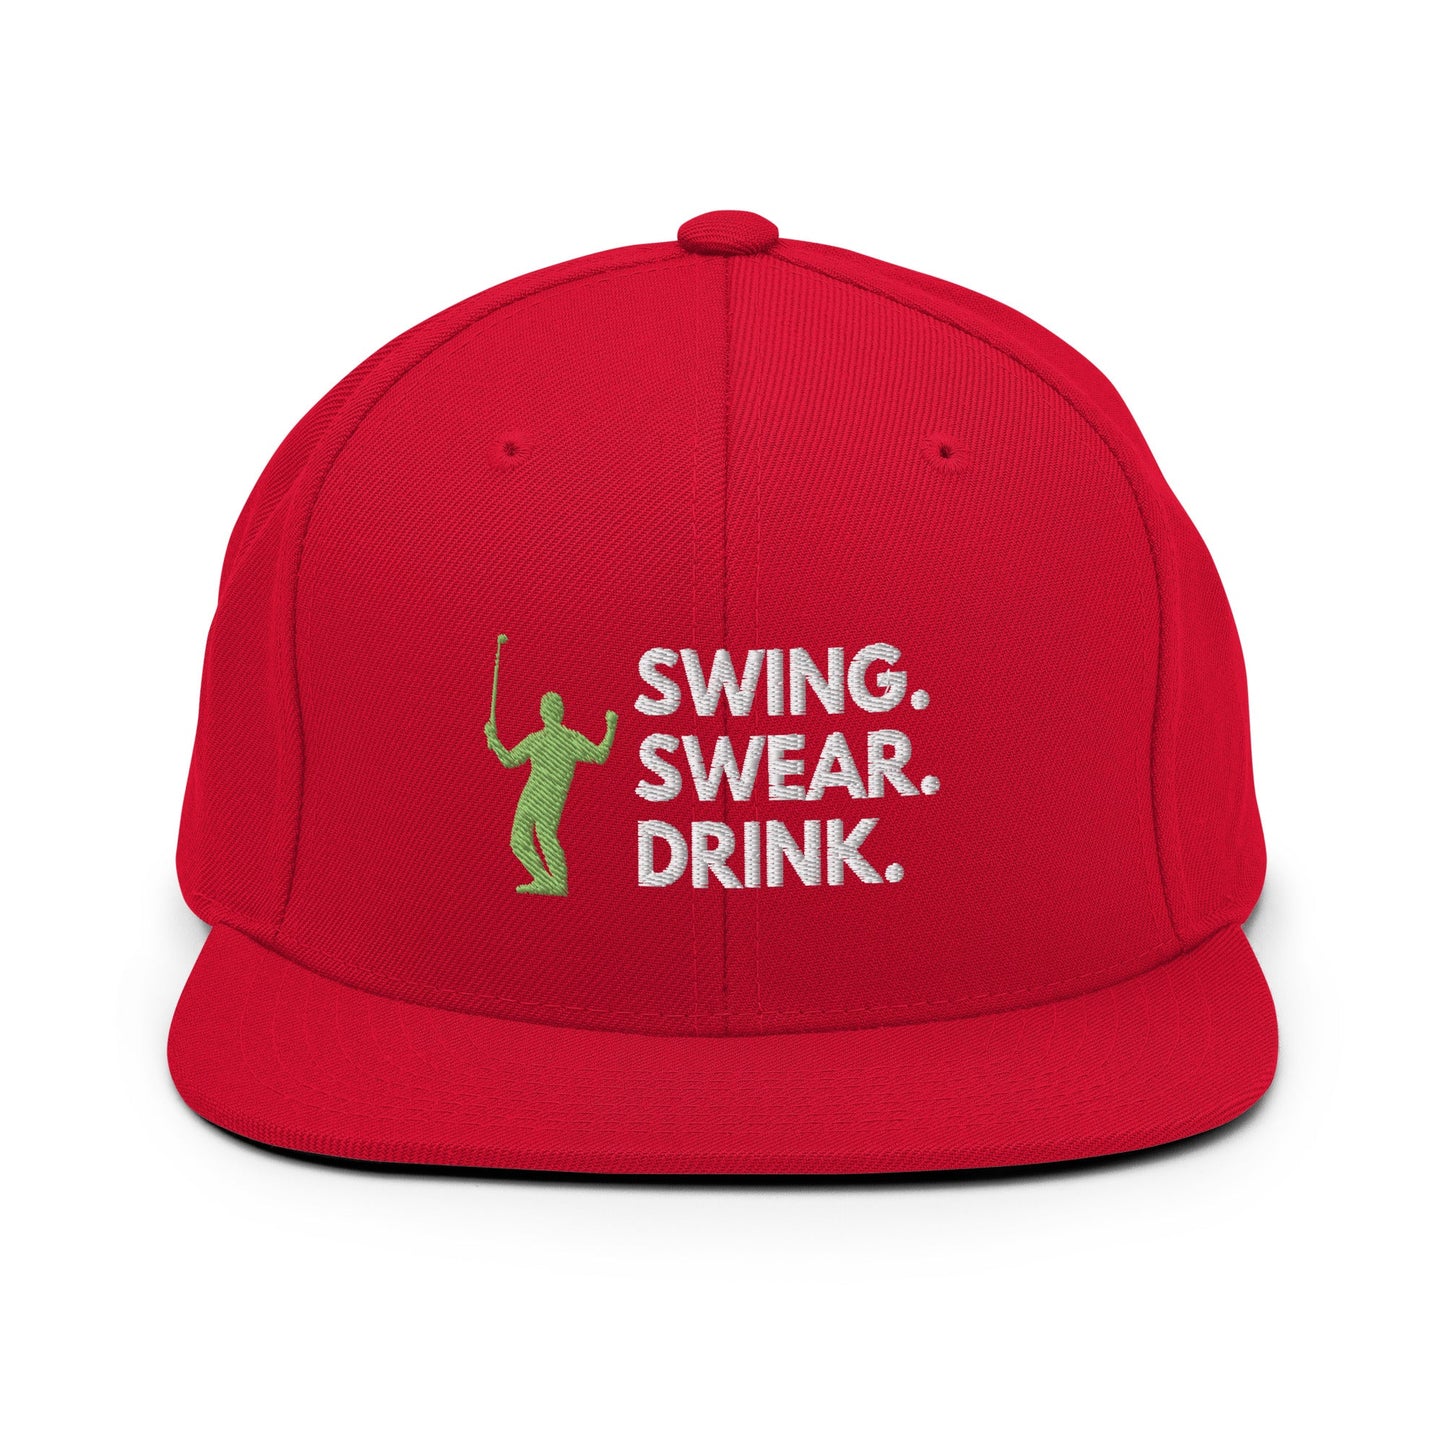 Funny Golfer Gifts  Snapback Hat Red Swing. Swear. Drink Snapback Hat